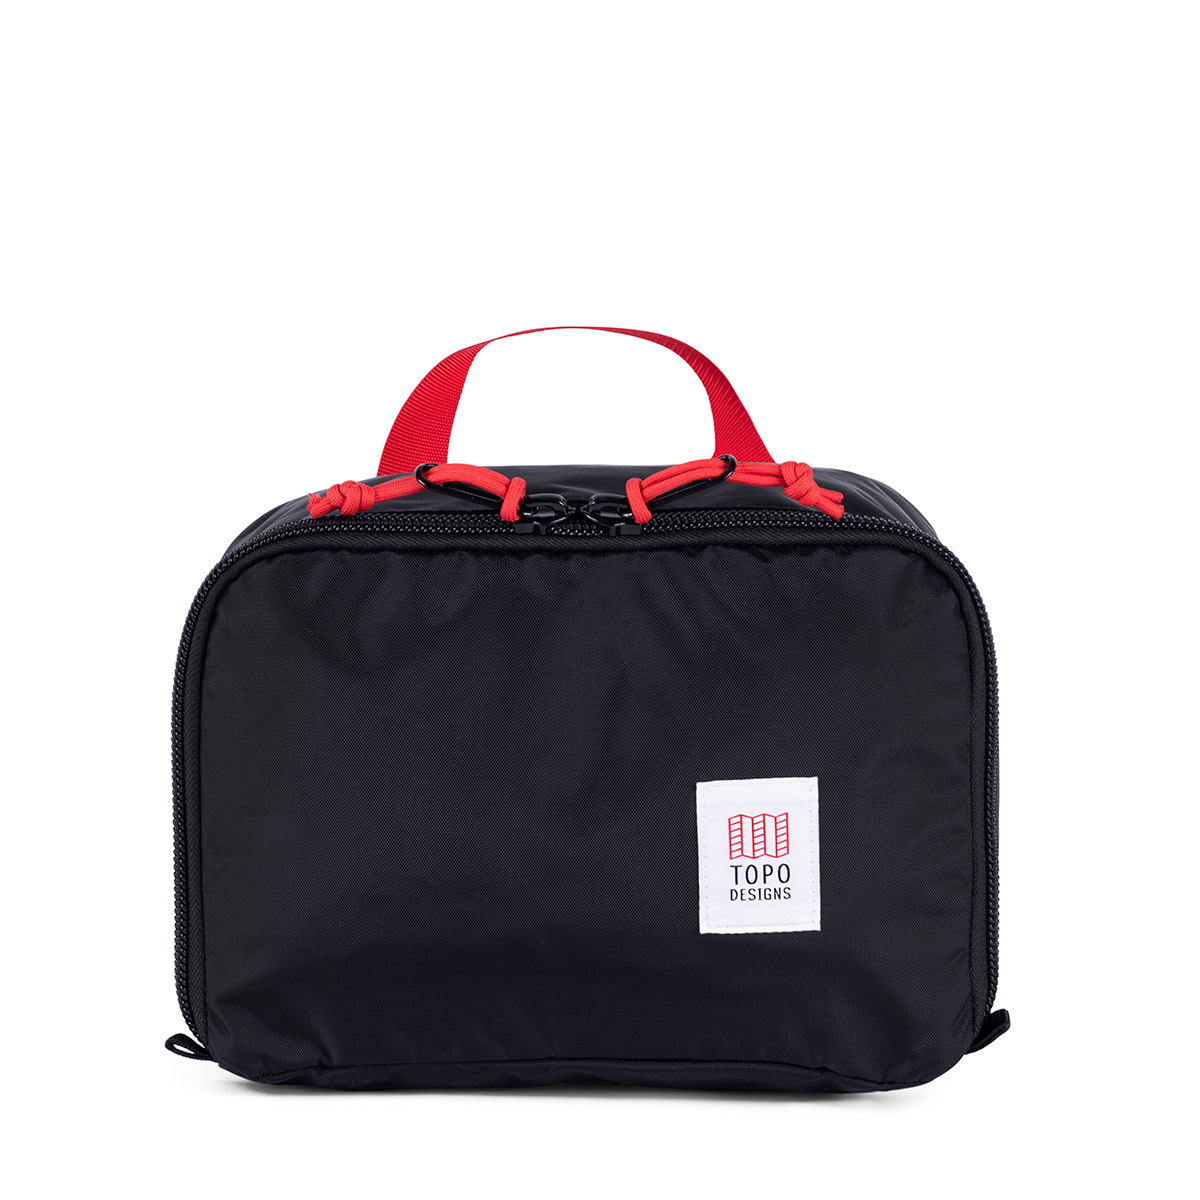 Topo Designs Pack Bag 10L Cube Black, die Optimierung Ihres Gepäcks war noch nie einfacher